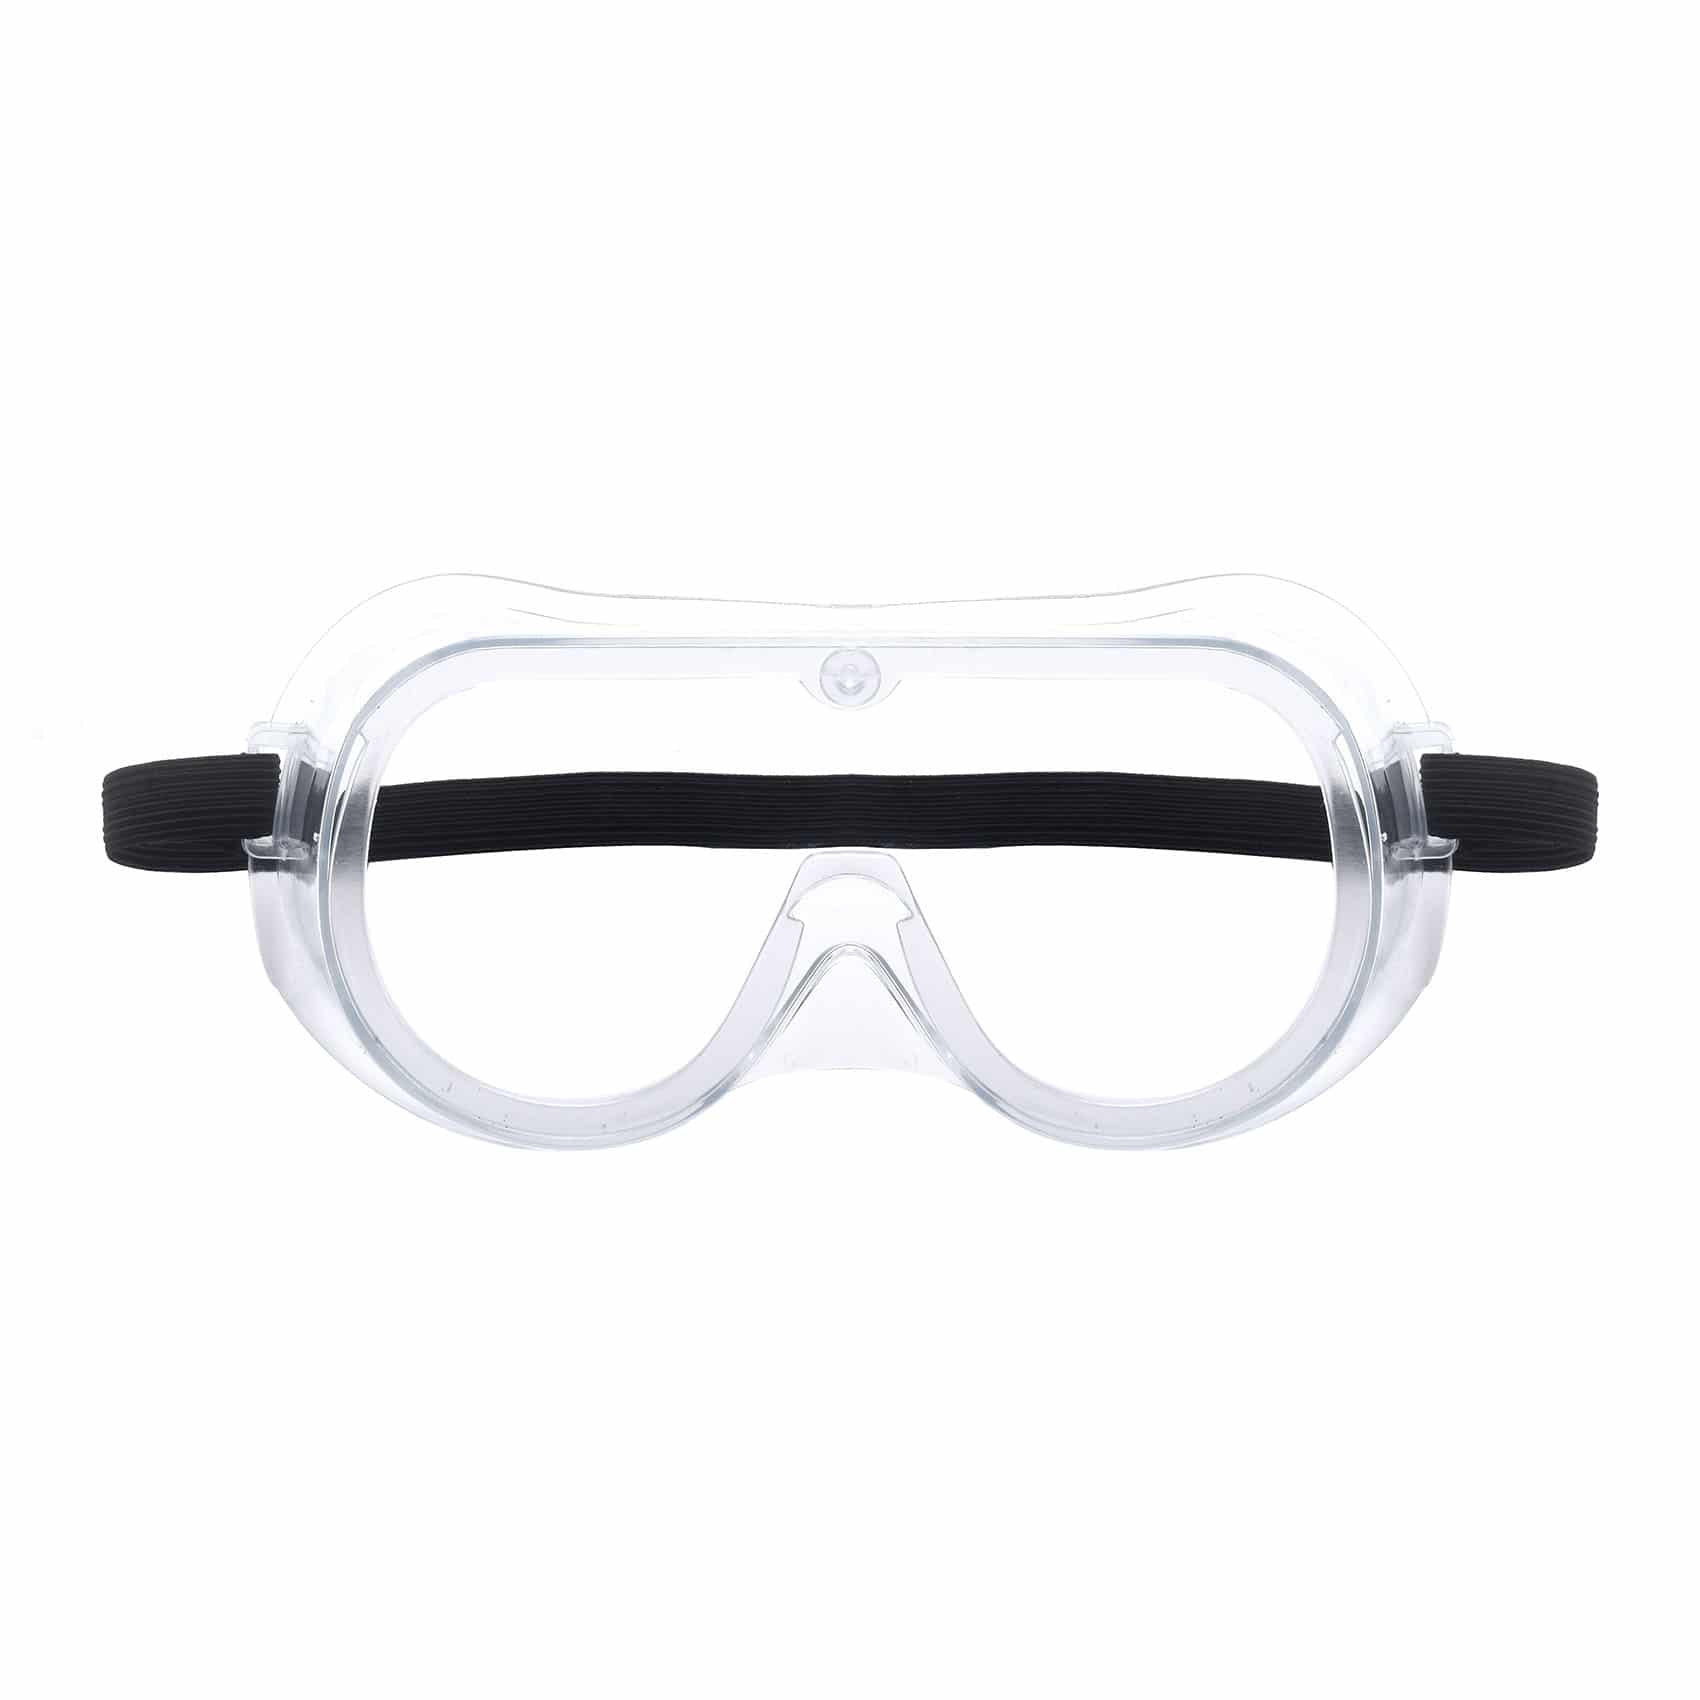 The Dexter Protective Goggles - PMedi.com